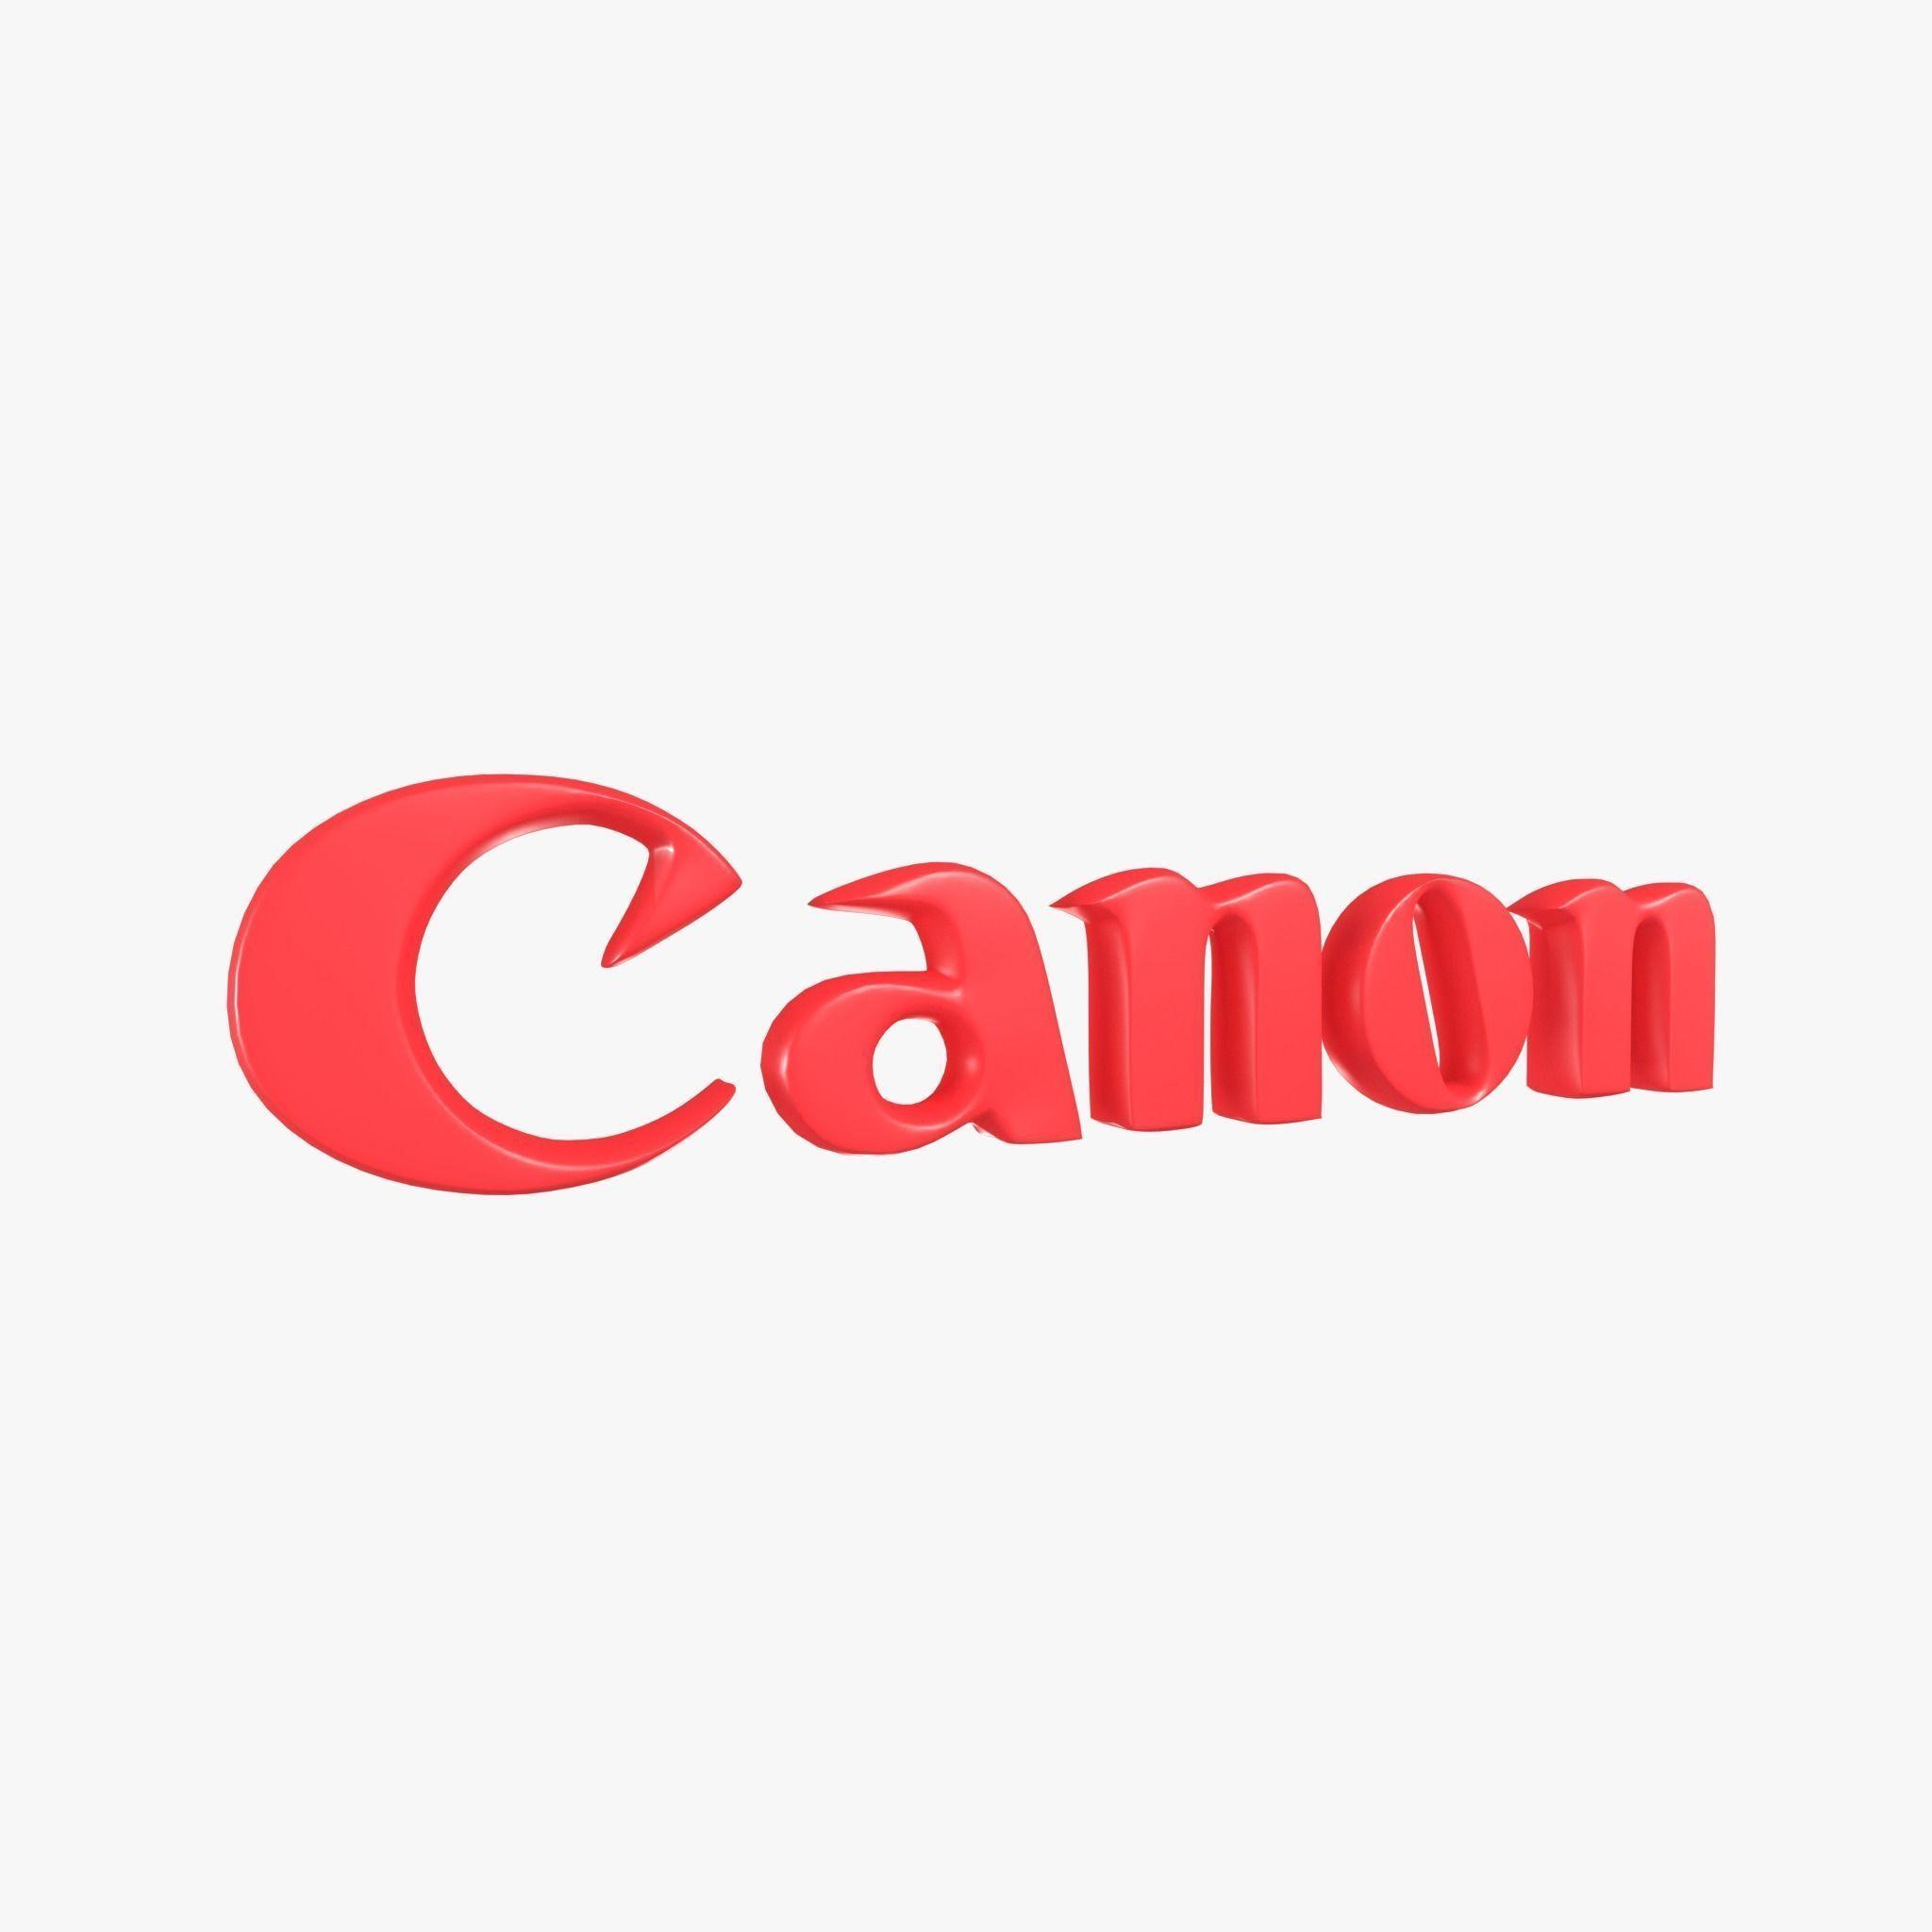 Conon Logo - Canon Logo 01D model